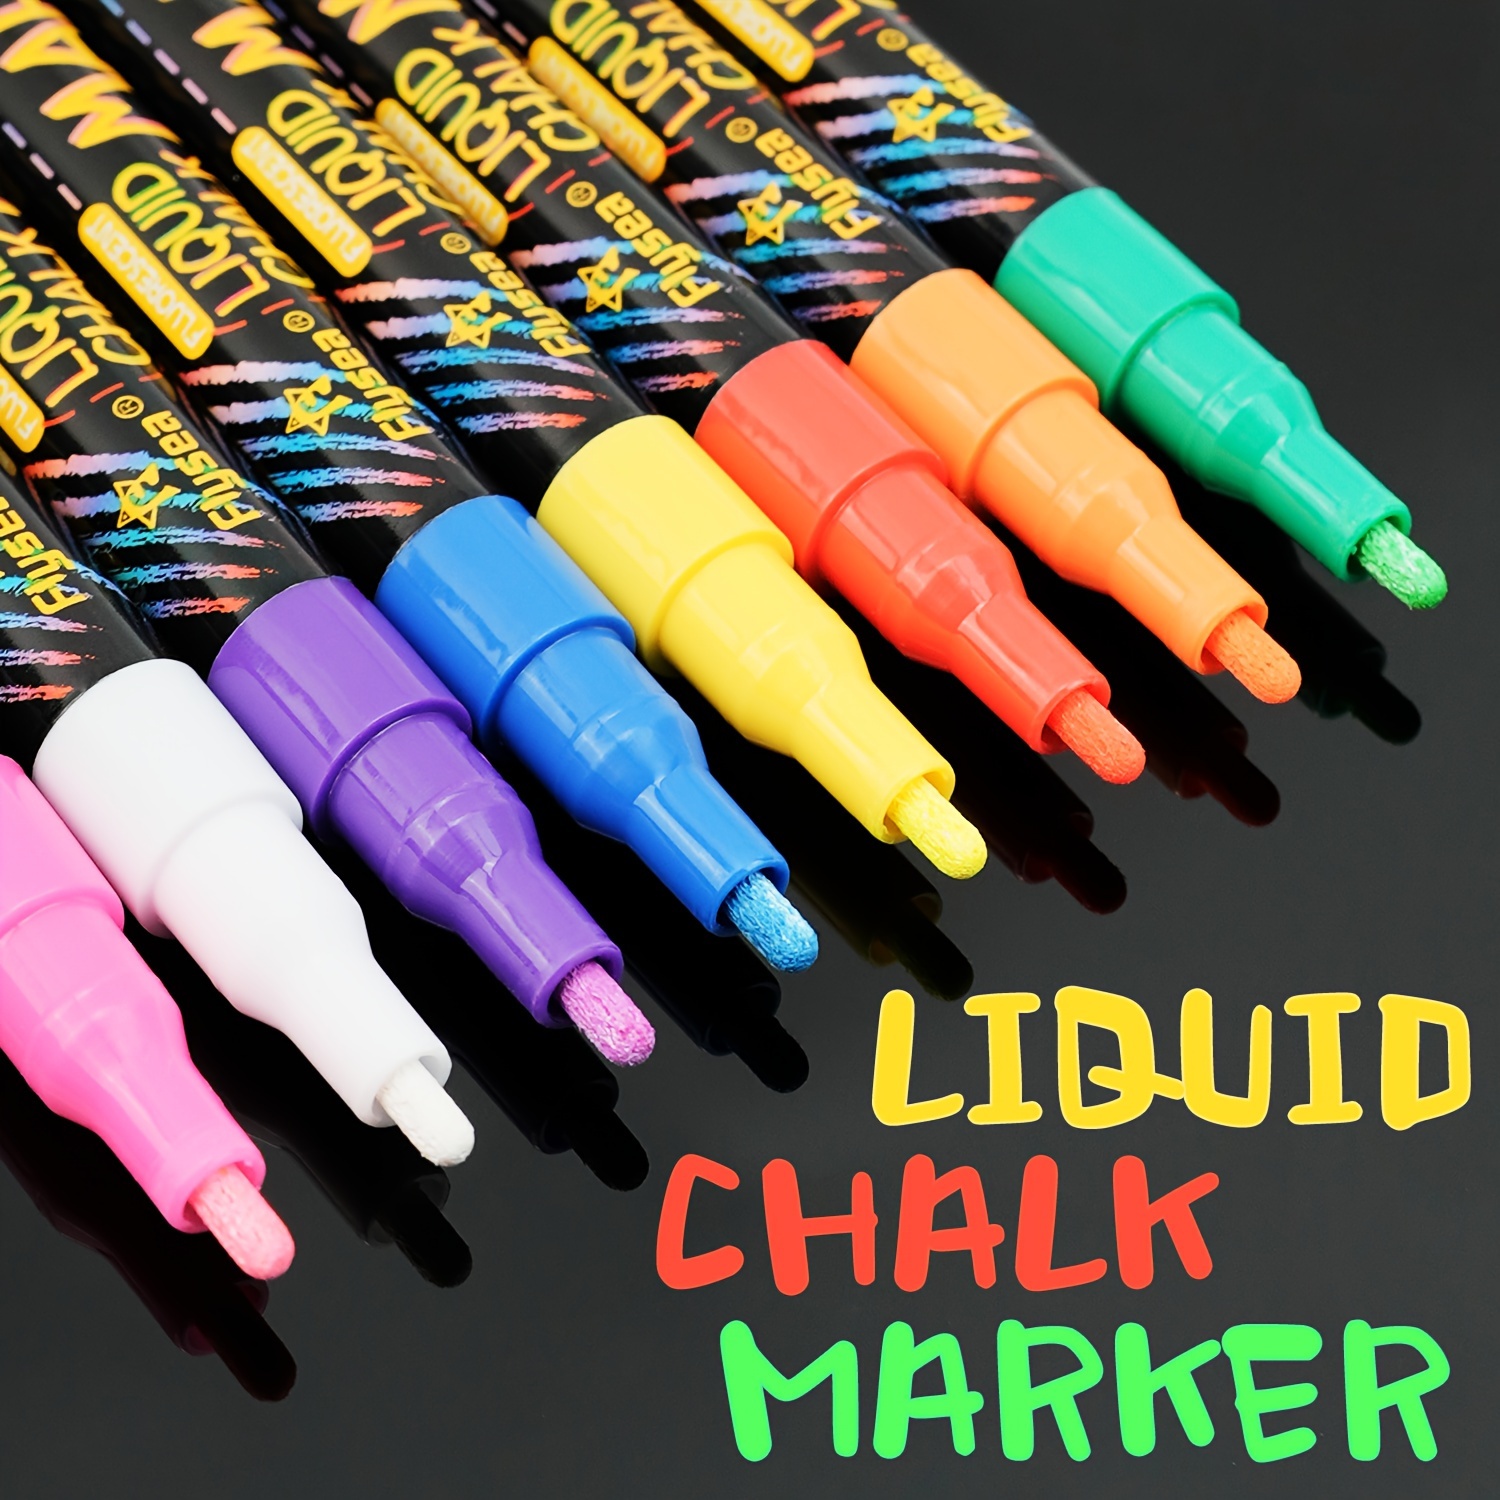 

8pcs Chalk Markers Set, Window Markers Erasable Chalk Marker Pens For Whiteboard Graffiti, Glassboard, Blackboards, Extra Fine Tip 1mm/0.039in